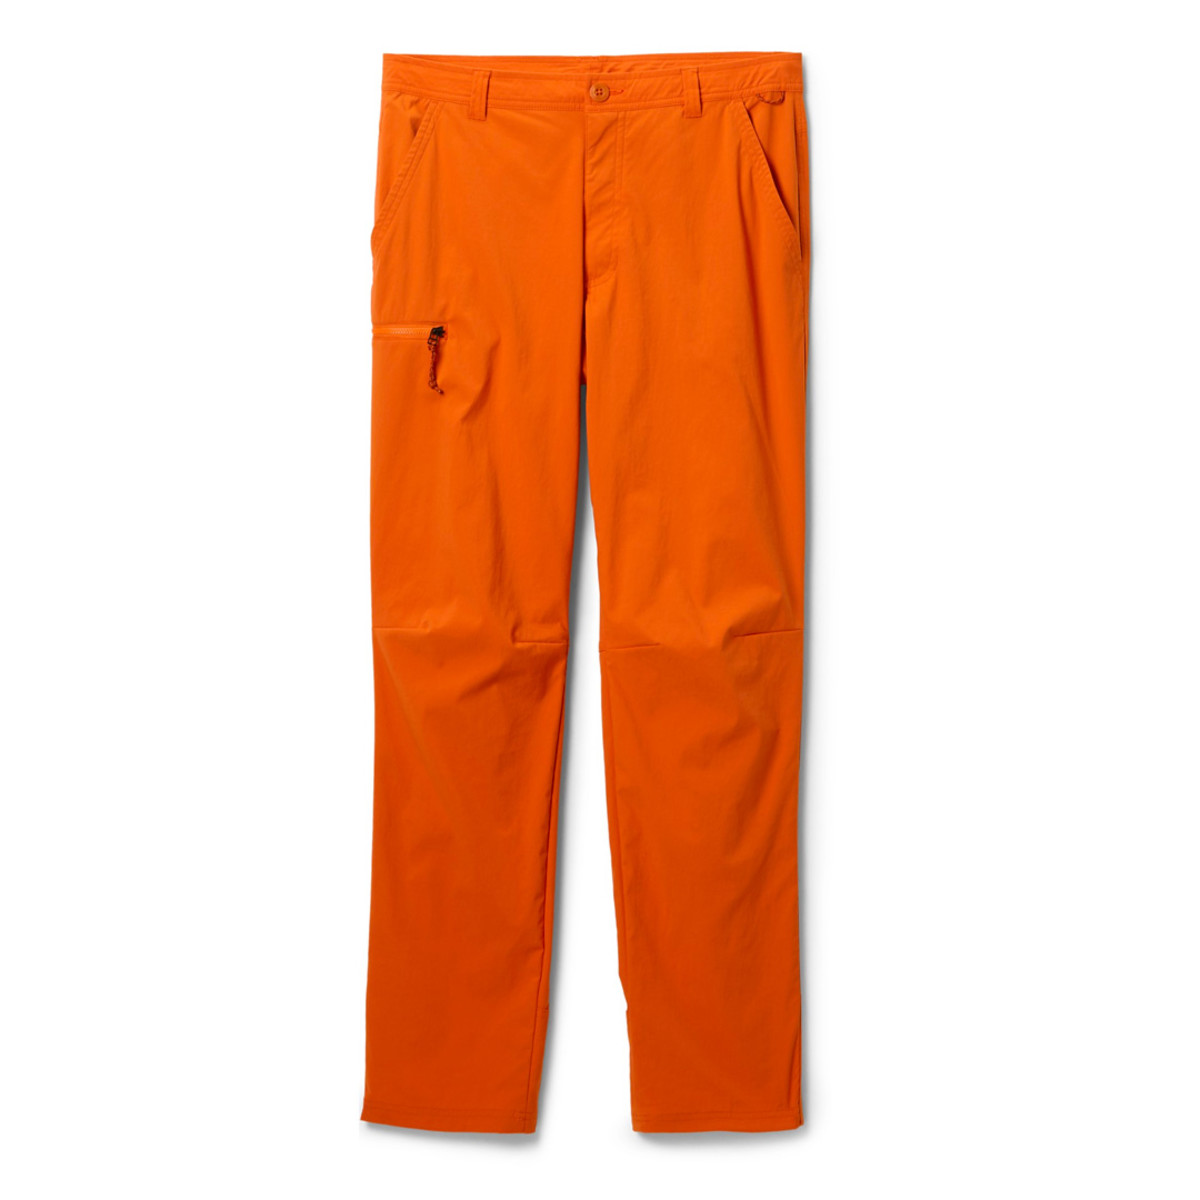 REI 37249 Men's Hiking Windbreaker Pants Size Large